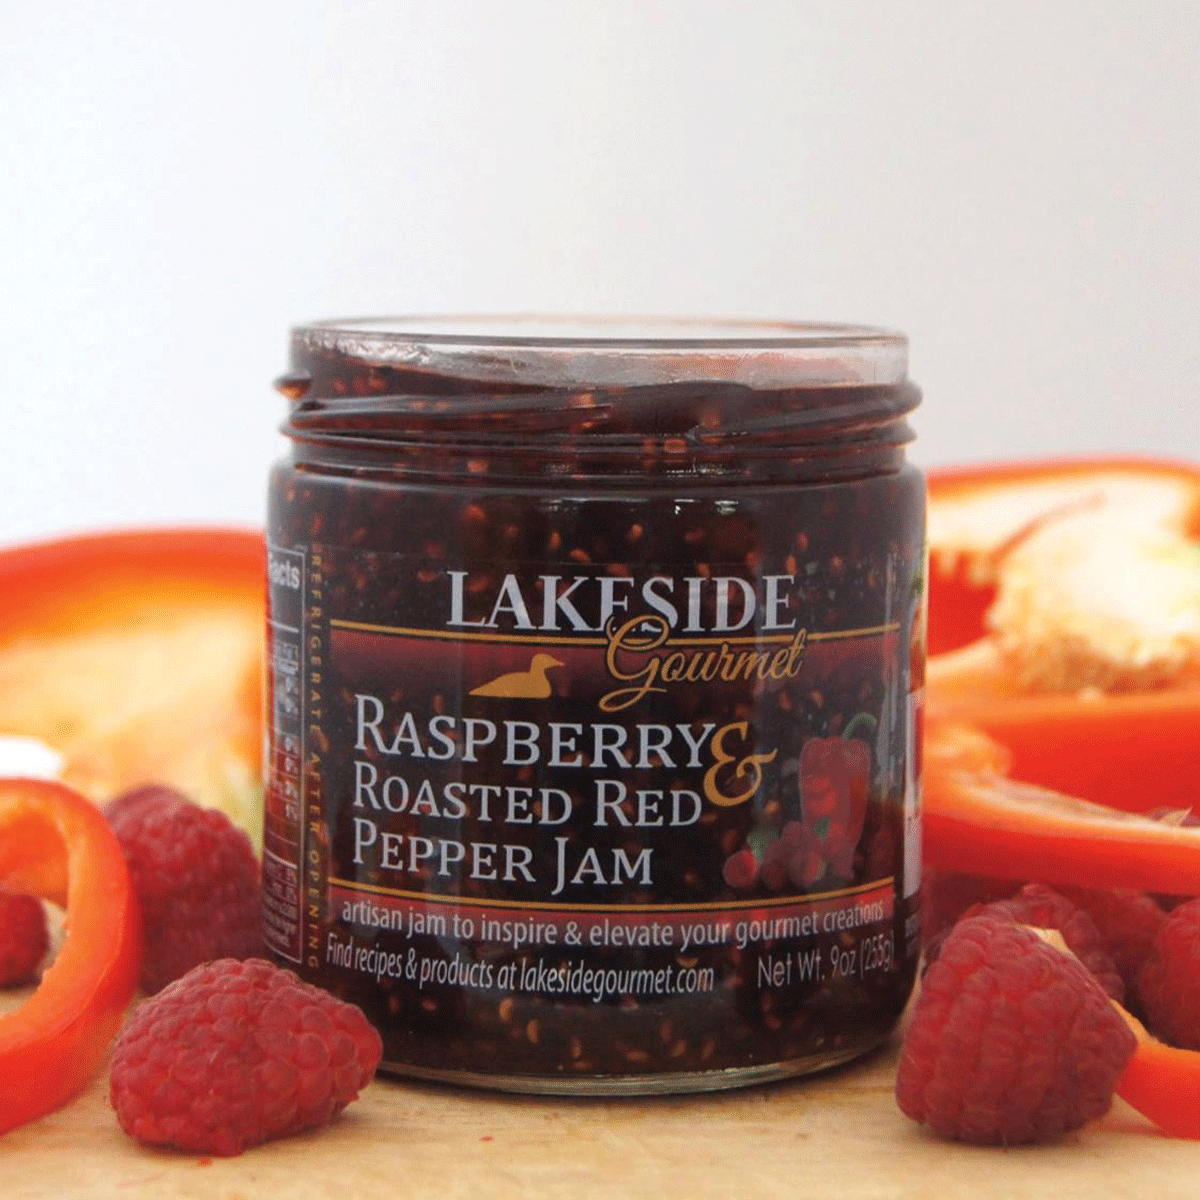 Raspberry & Roasted Red Pepper Jam (2 & 4 packs)